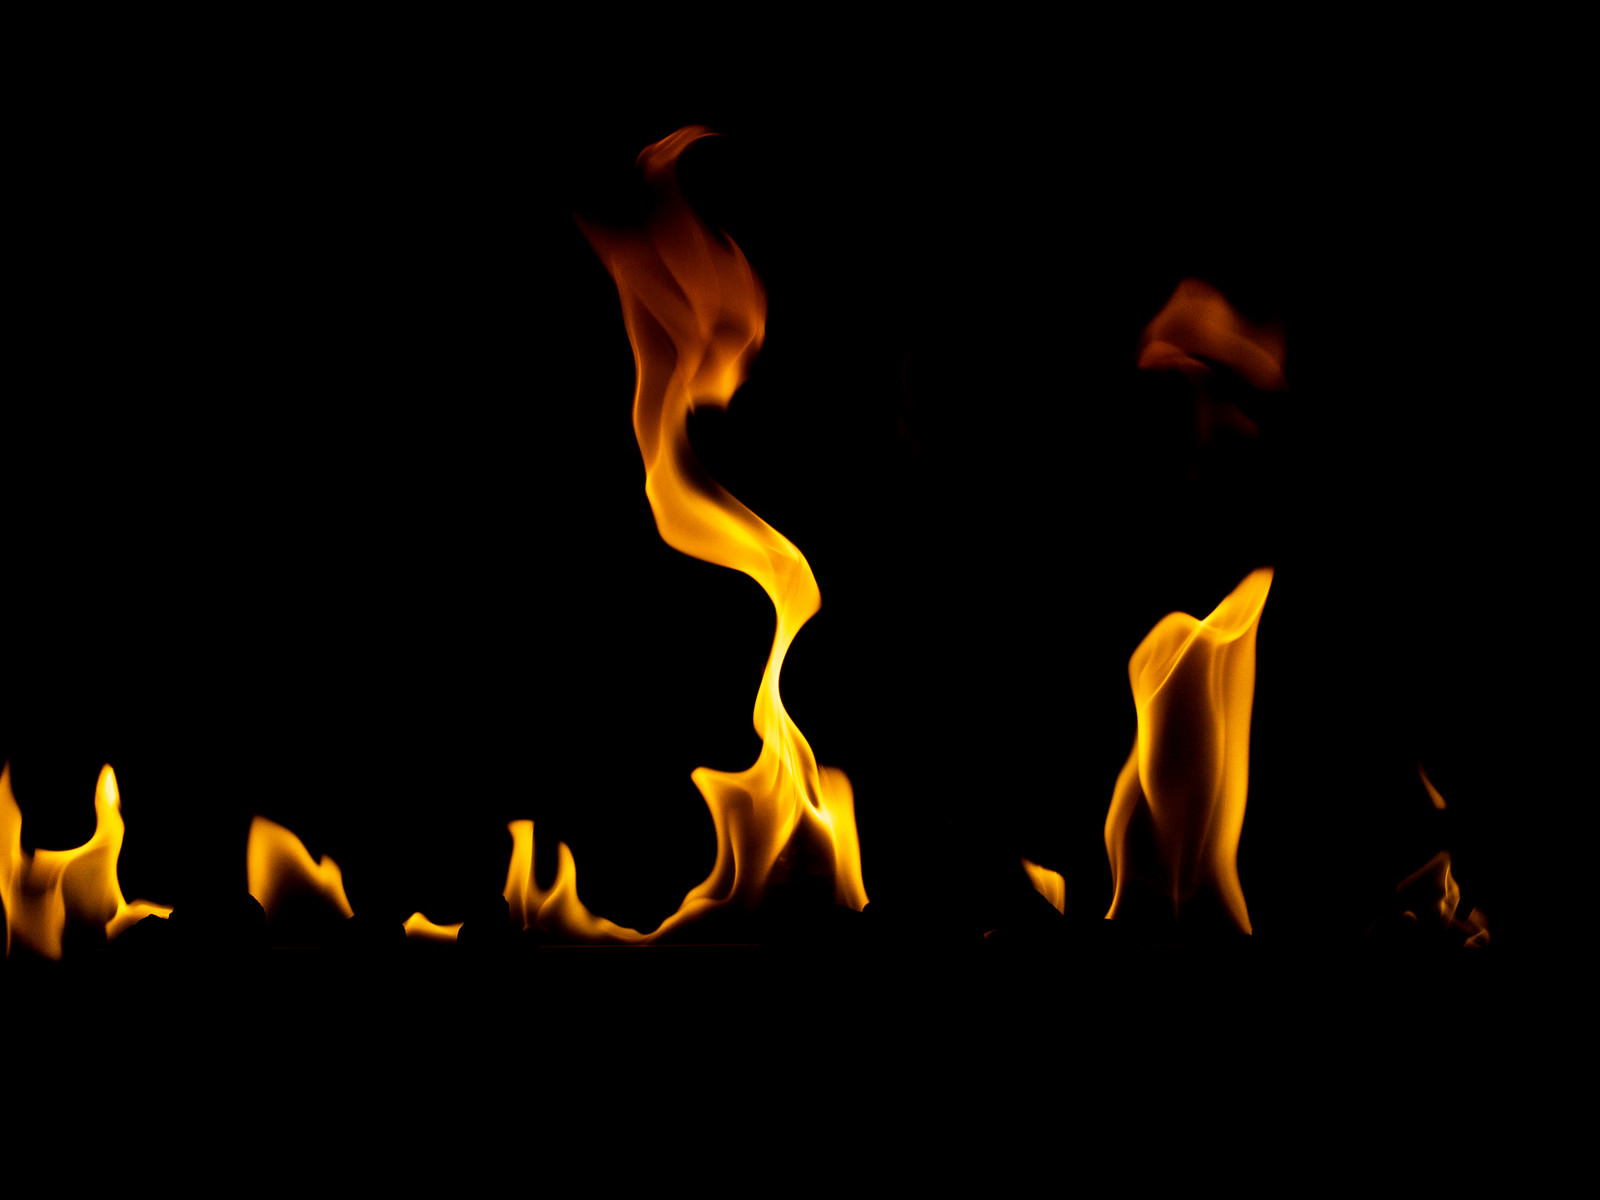 火が揺れながら燃える様子のフリー素材